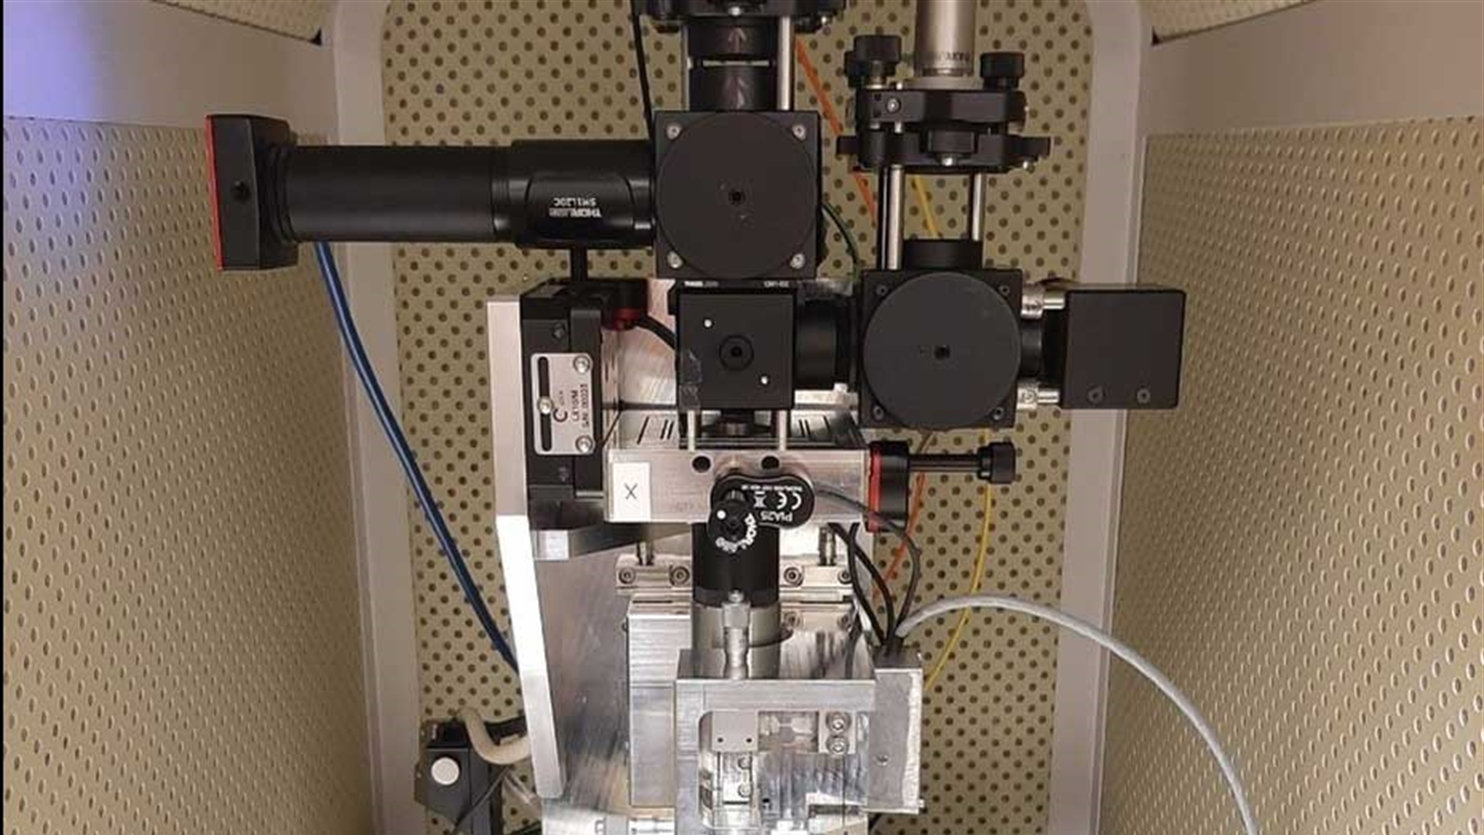 Scanning probe quantum magnetometer